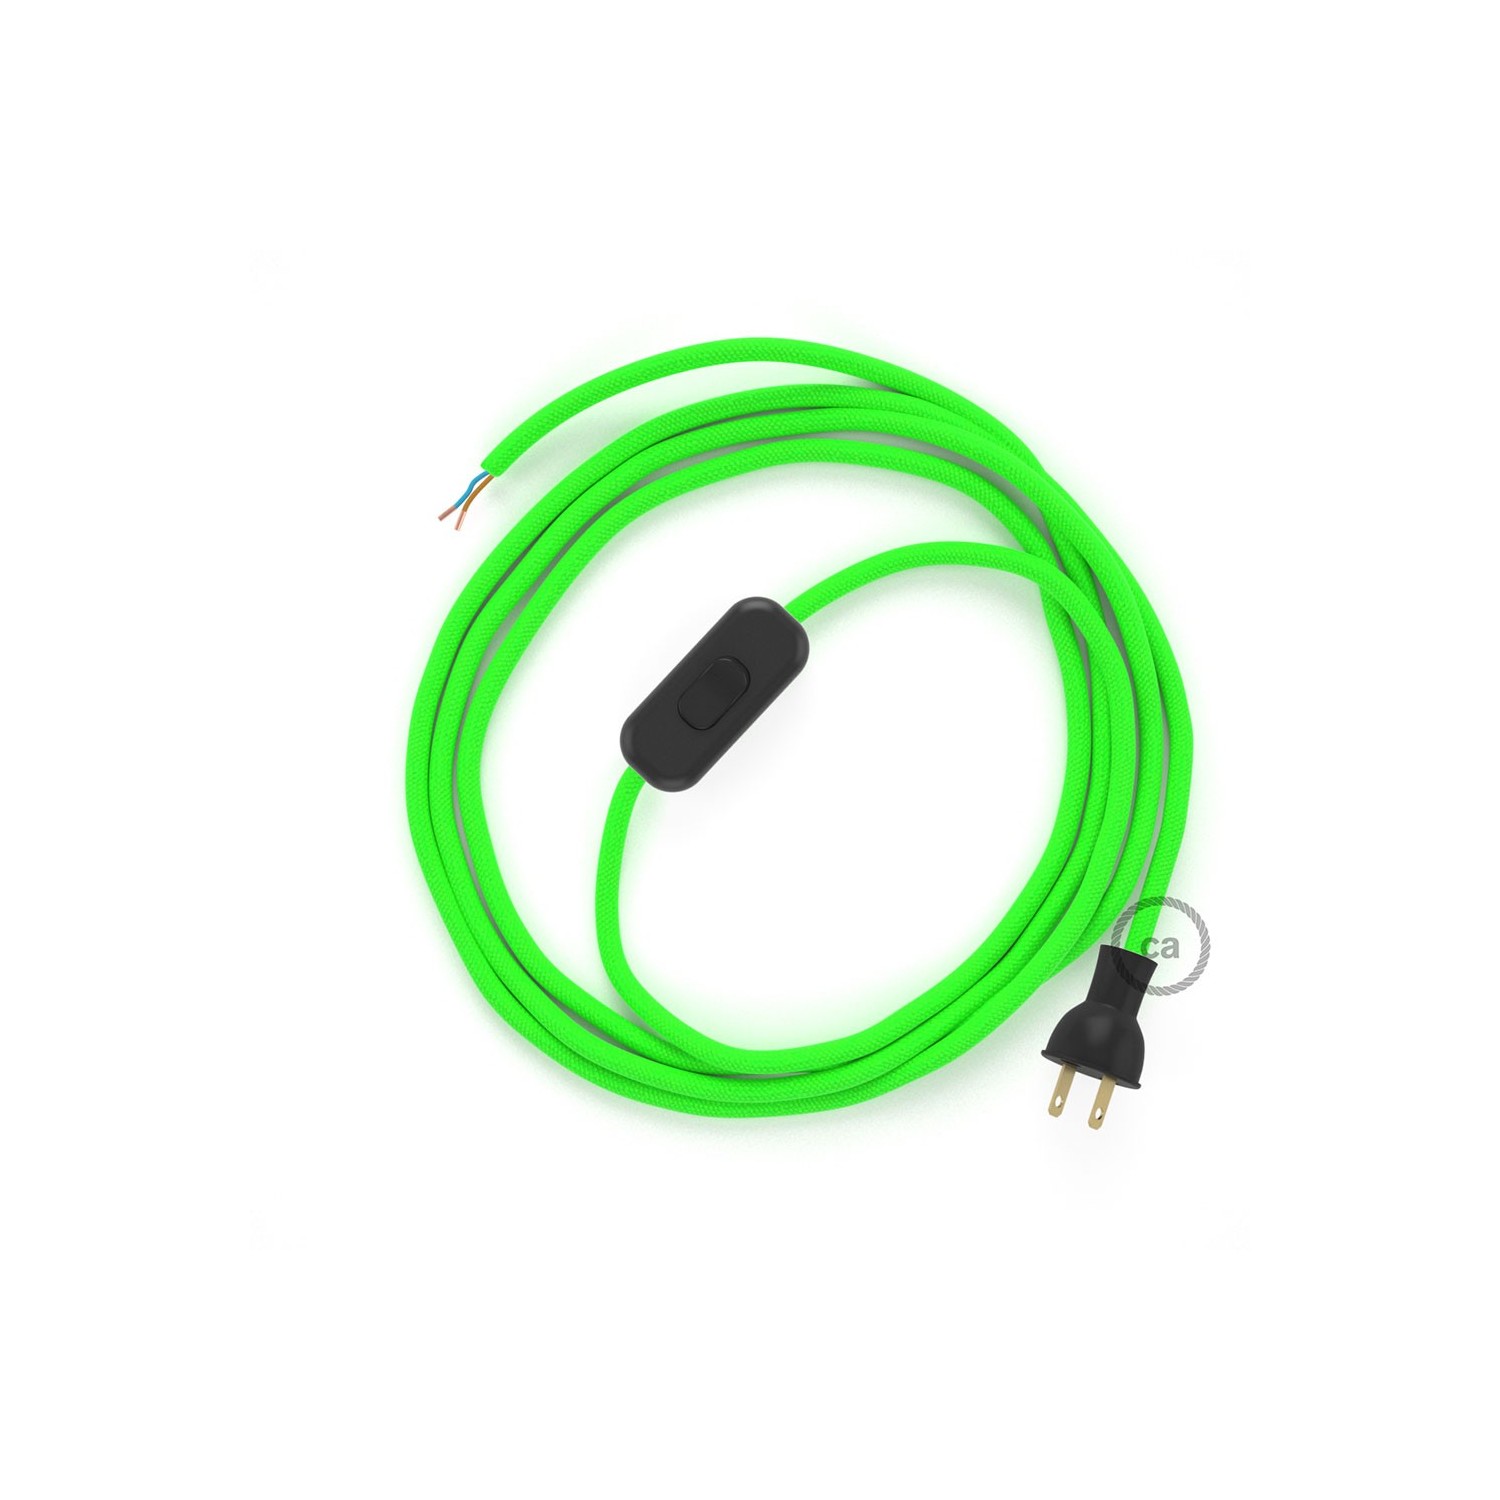 Cableado para lámpara de mesa, cable RF06 Rayón Verde Fluorescente 1,8 m. Elige el color de la clavija y del interruptor!